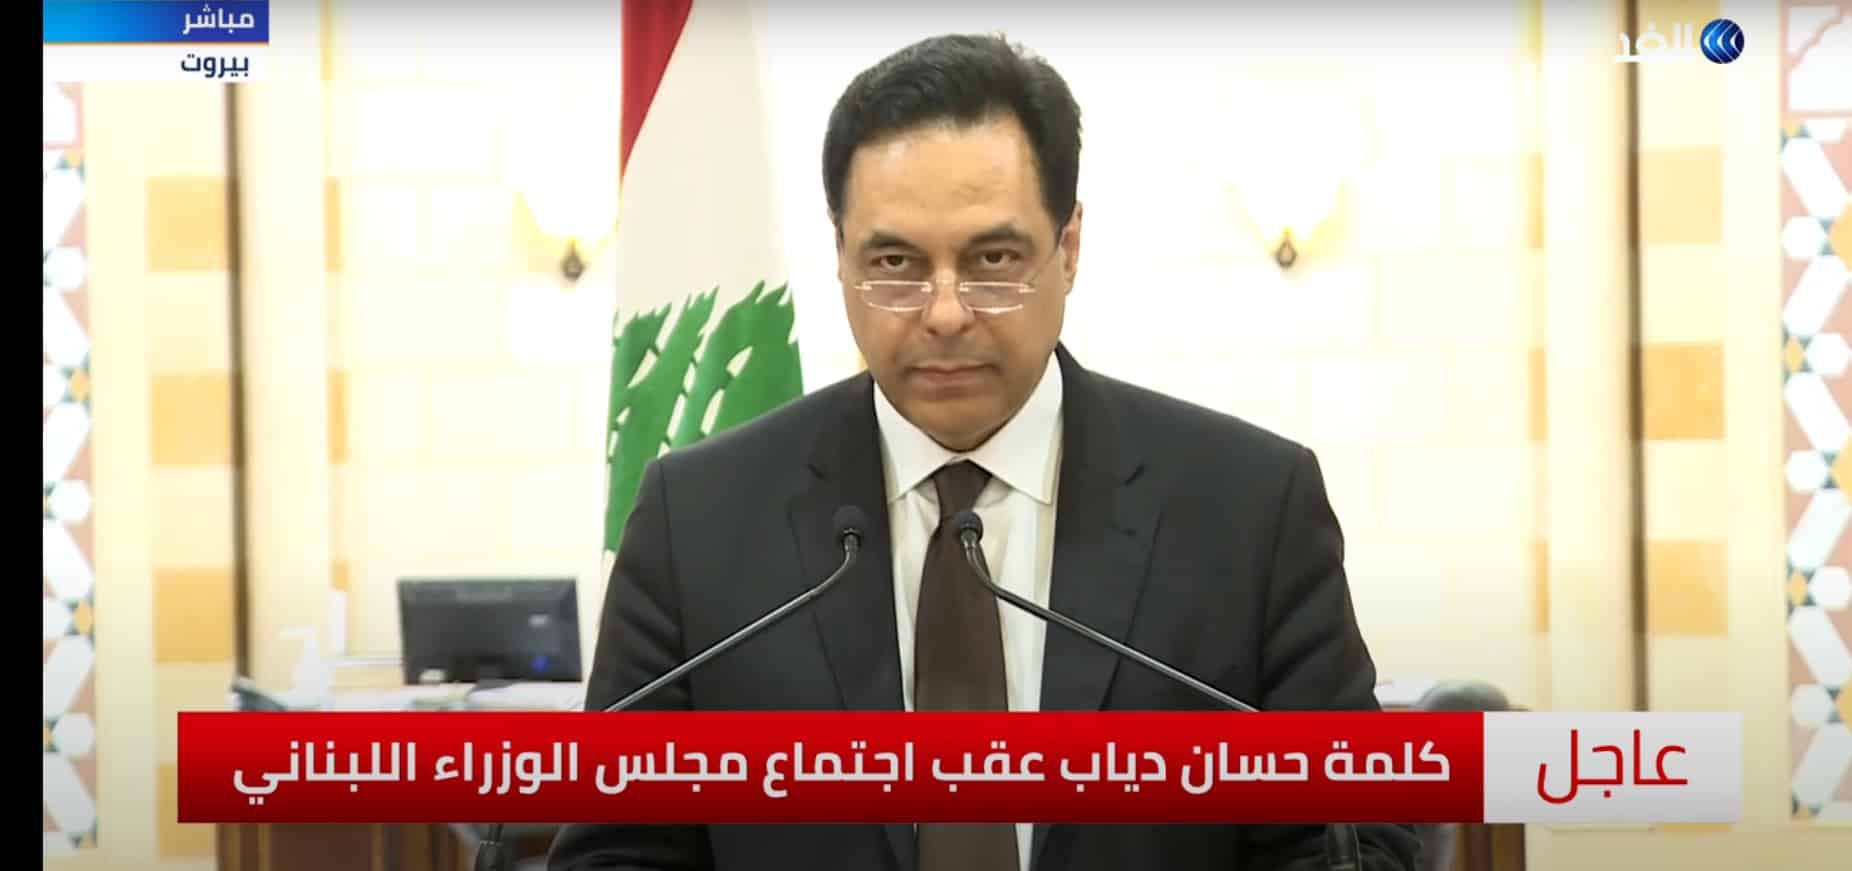 فيديو.. خطاب استقالة حكومة حسان دياب في لبنان